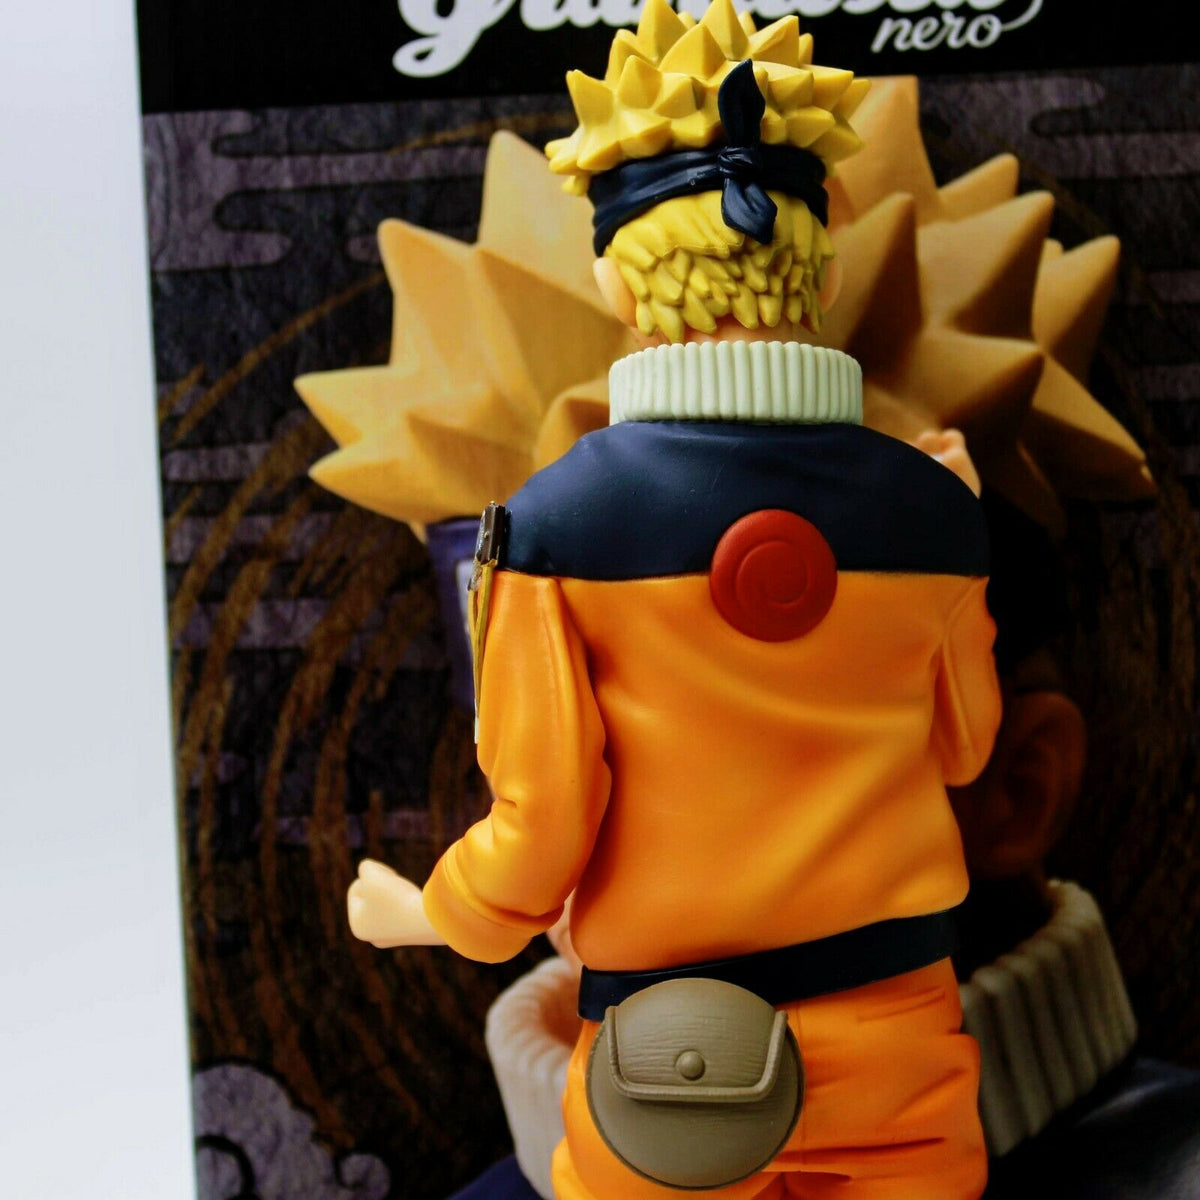 Naruto Shippuden - Figurine Sasuke Uchiha Grandista Nero 2 28 cm - manga  story versailles